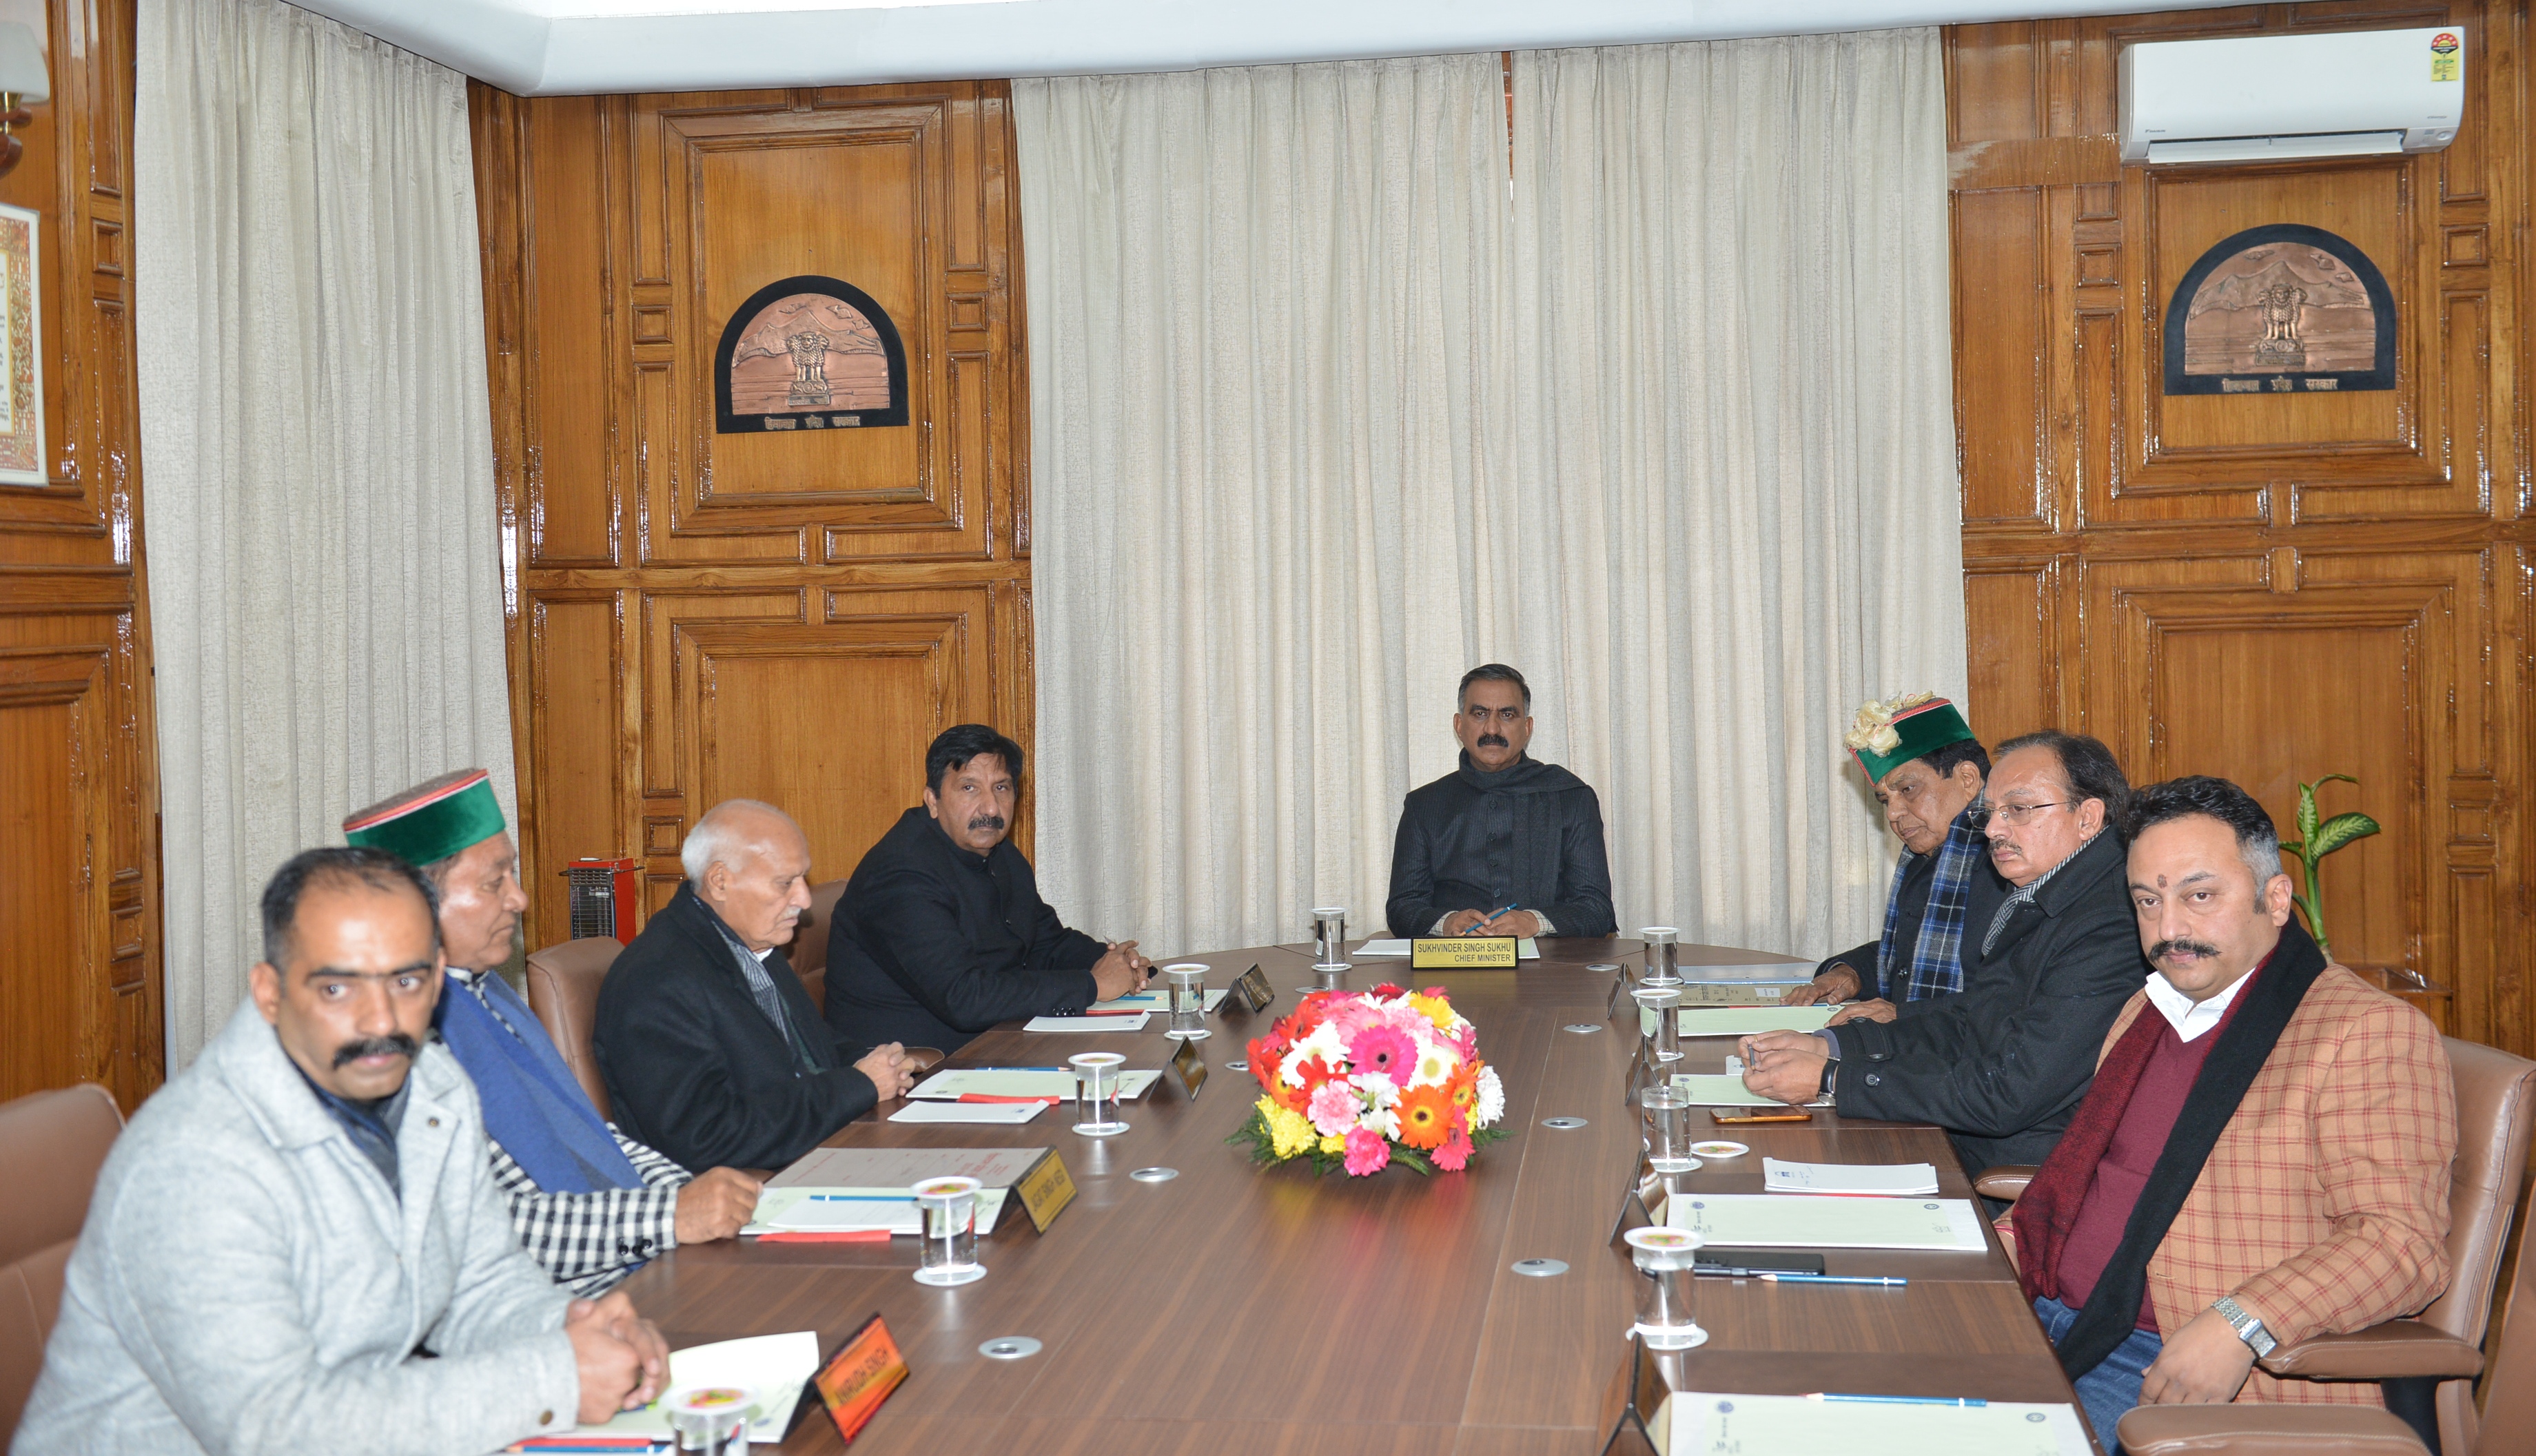 सुखविंदर सिंह सुक्खू सरकार की 1 मार्च को कैबिनेट मीटिंग